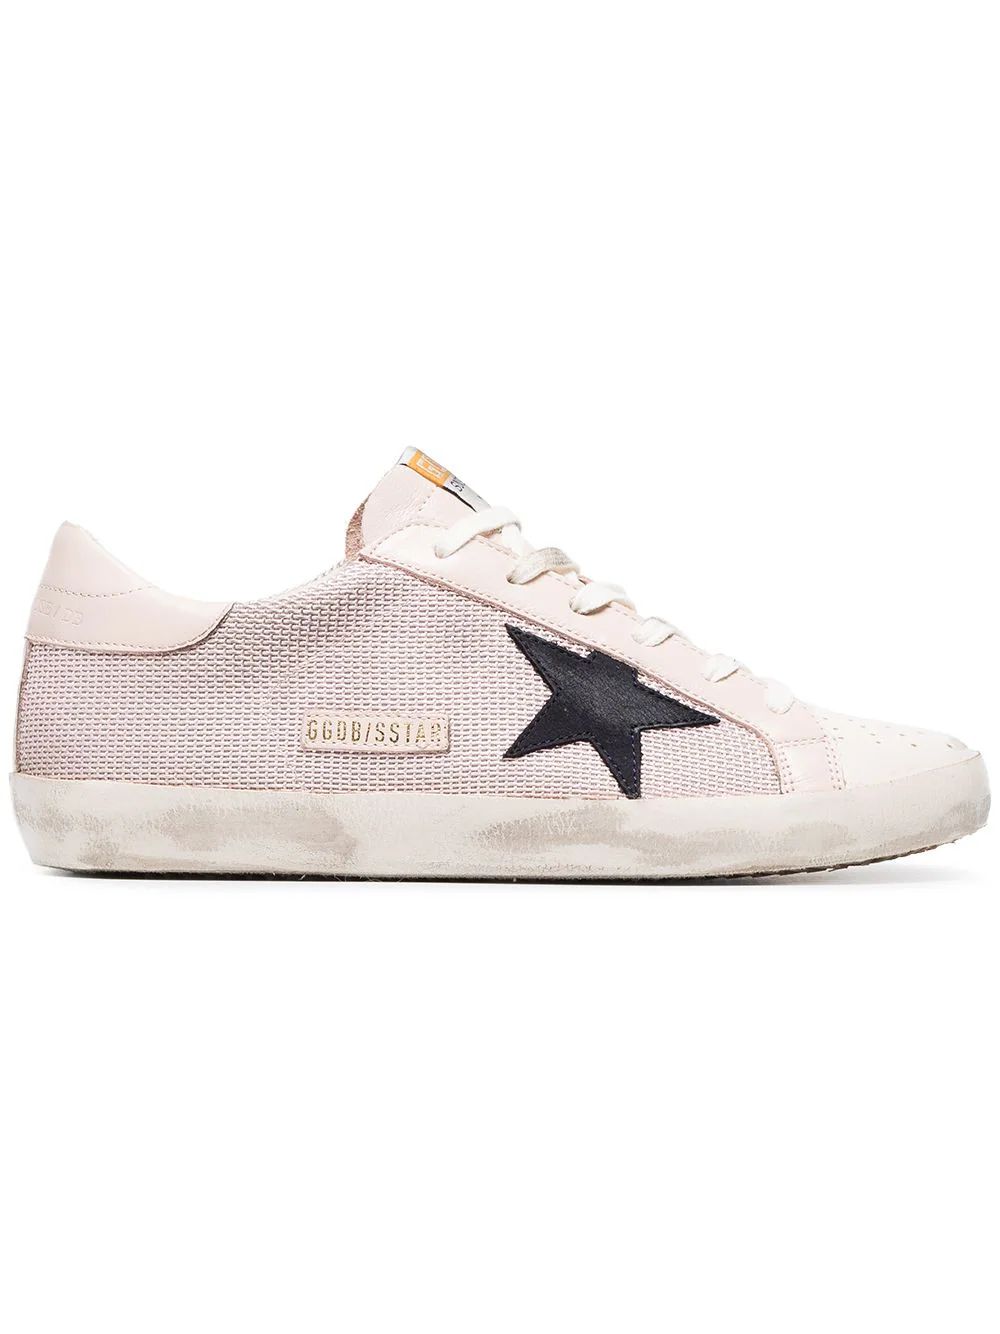 Golden Goose Deluxe Brand Superstar mesh sneakers - Pink | FarFetch Global